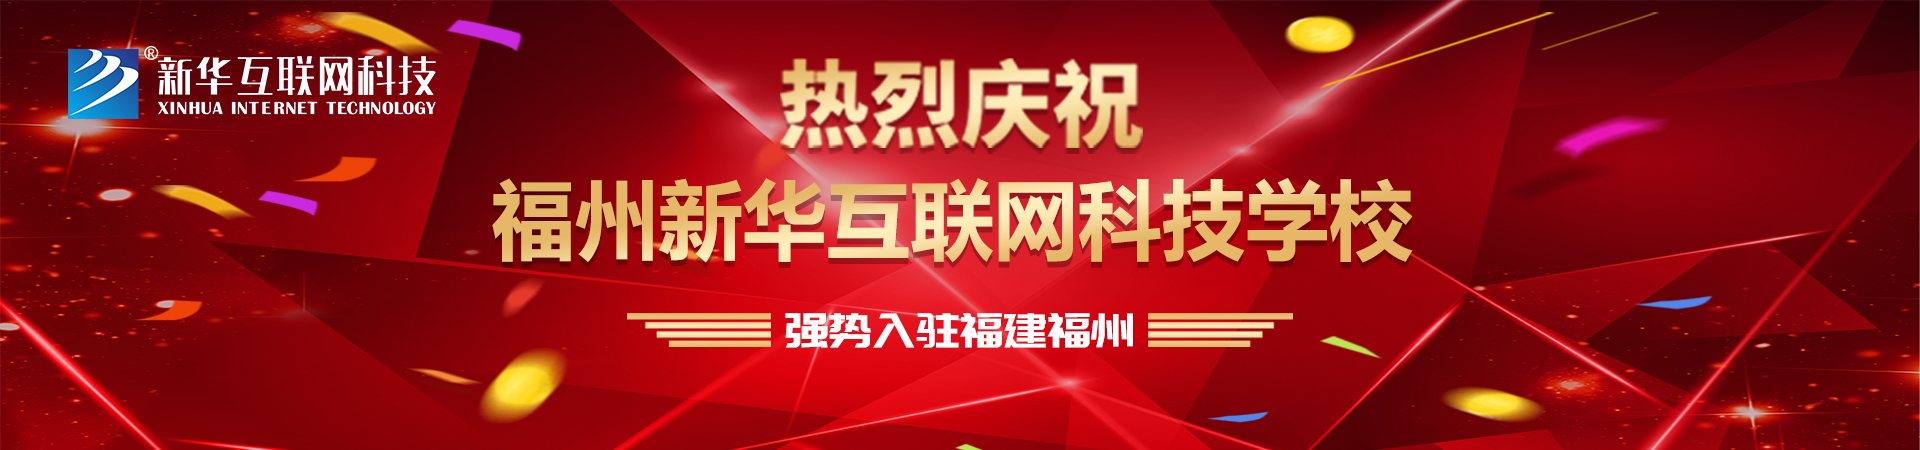 热烈庆祝福州新华互联网科技学校 强势入驻福建福州